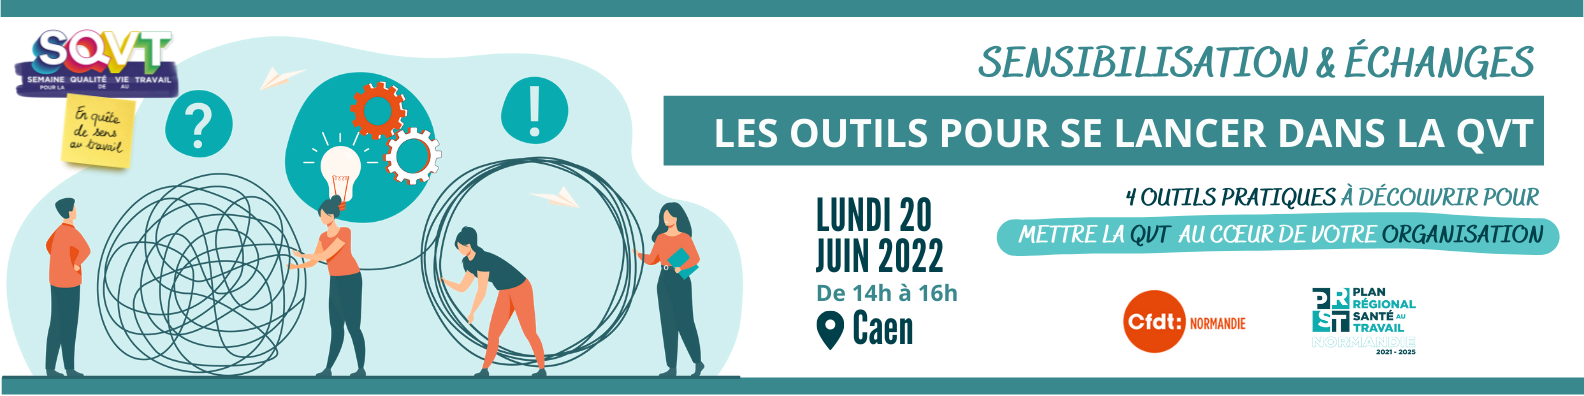 Rendez-vous le lundi 20 juin à Caen (14h-16h)